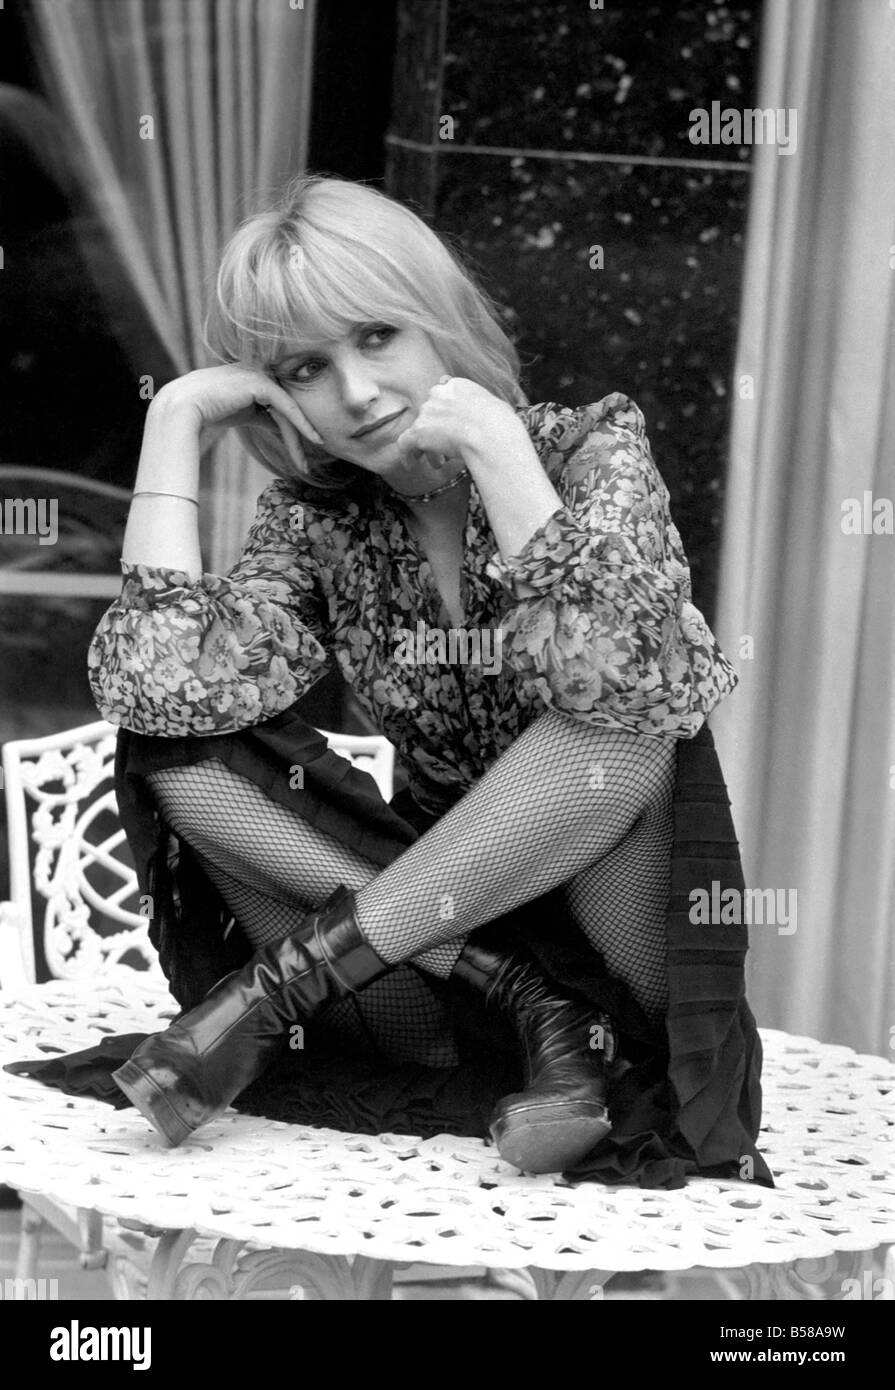 L'actrice Bulle Ogier film français photographié à la barre de la Bohème Chelsea, à Londres. Février 1975 75-00948-004 Banque D'Images